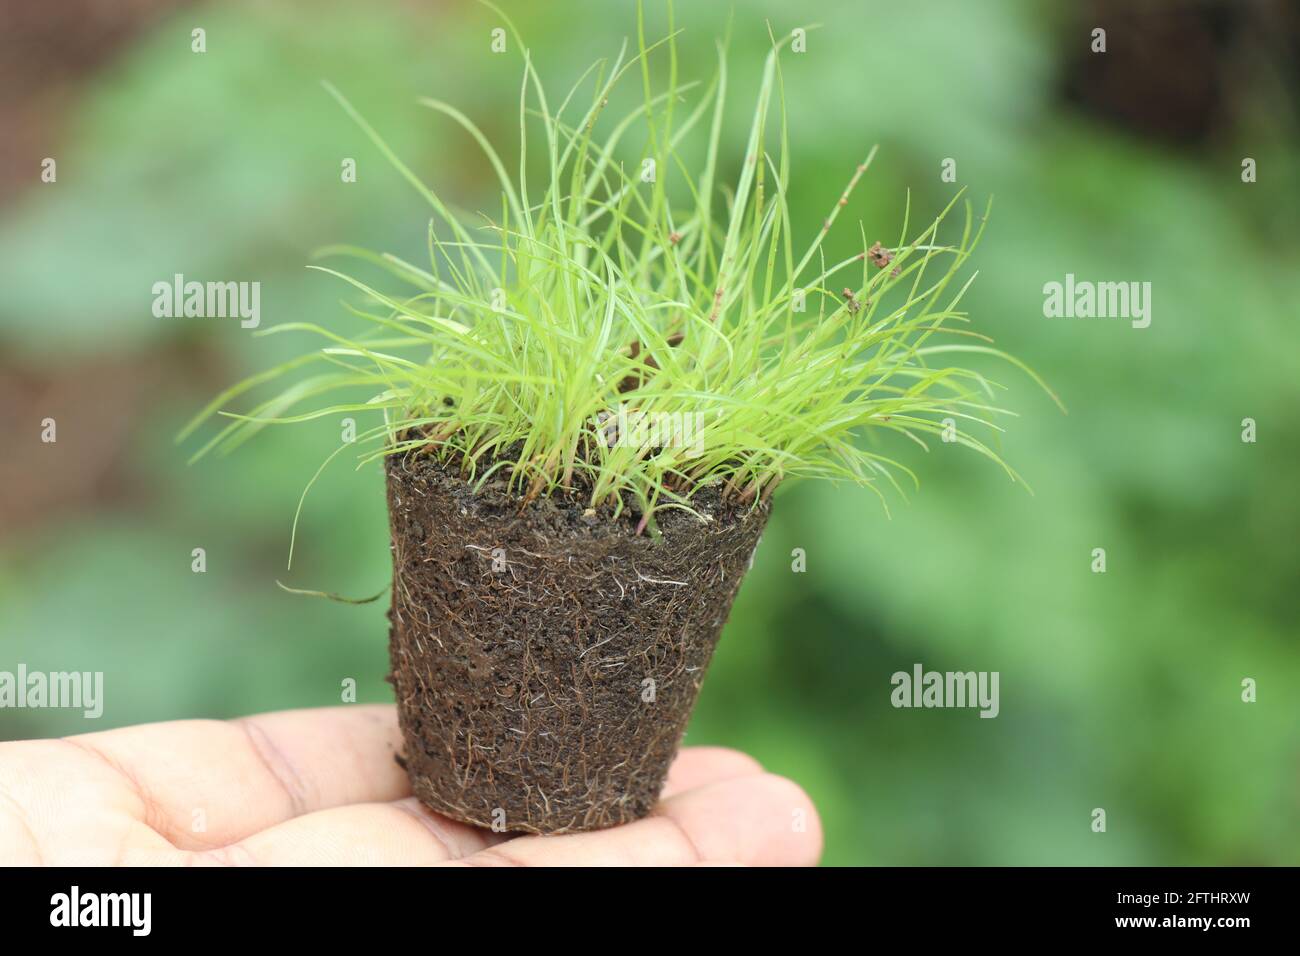 Kleine topfförmige Erde mit einer Gruppe von frischem, grünem Gras Die Pflanze wurde aus der Keimschale in der Hand gehalten Stockfoto